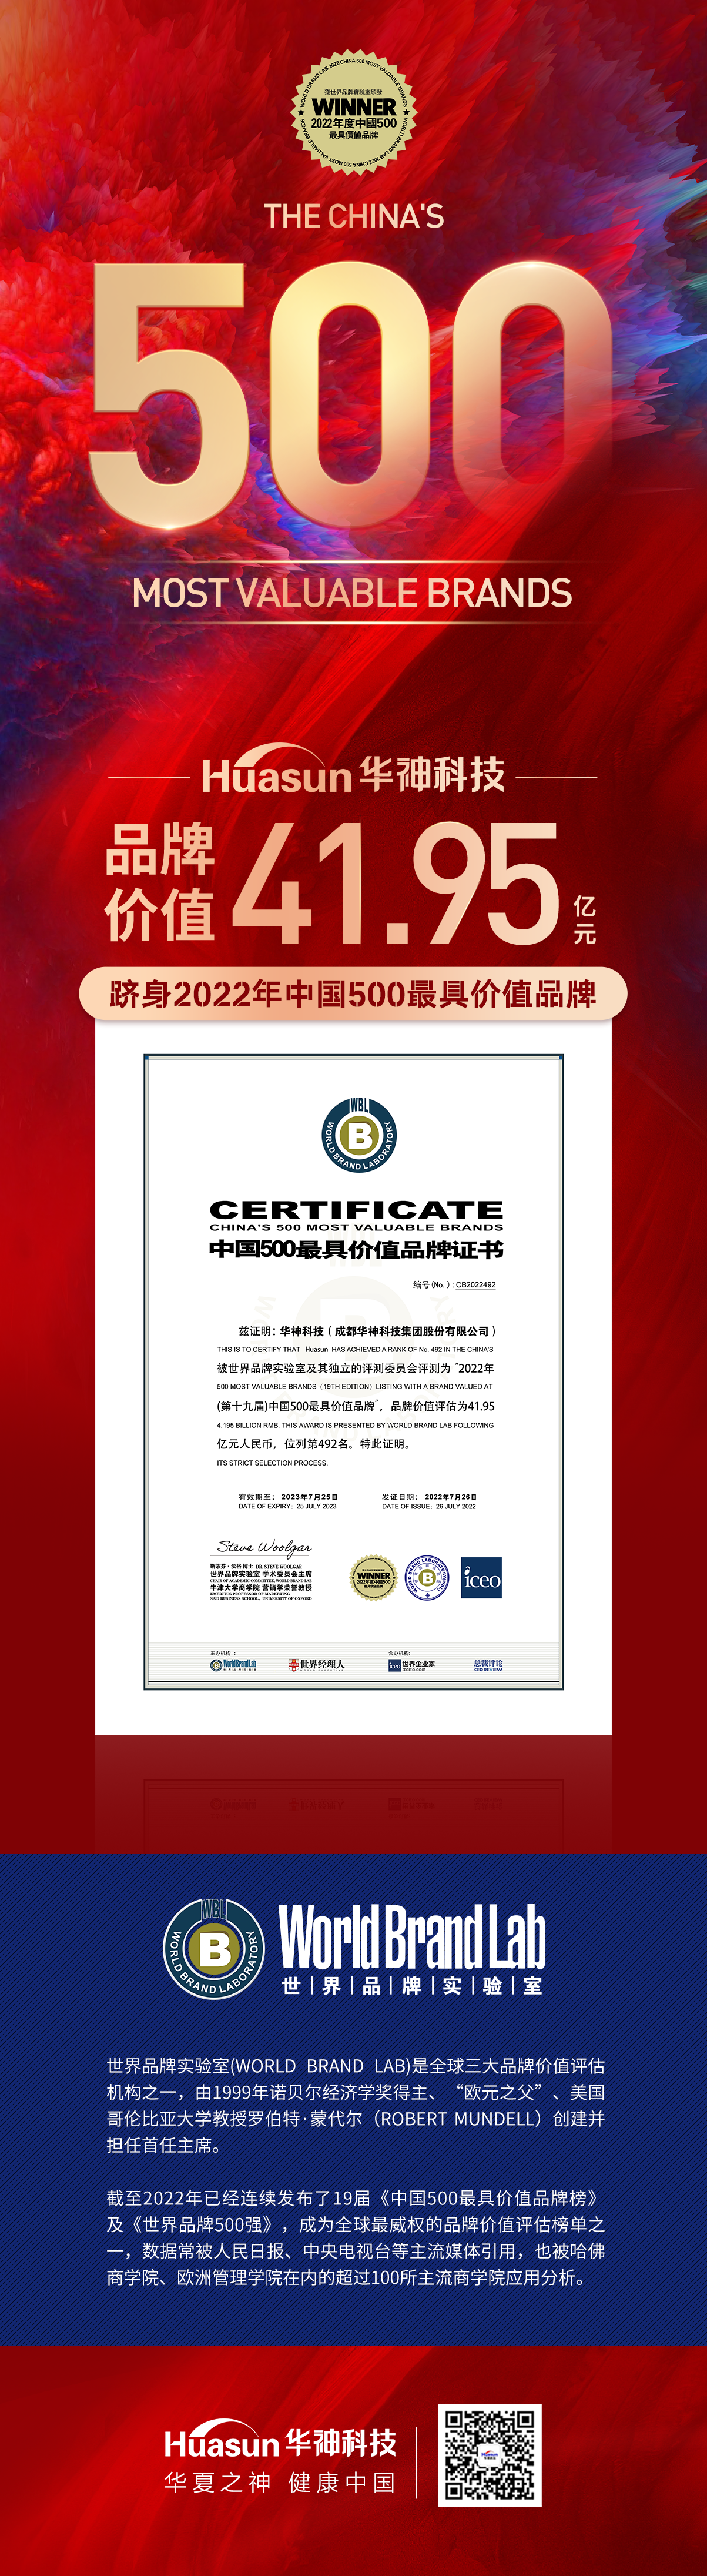 重磅 | 管家婆三肖必中特平台首次荣膺中国500最具价值品牌 品牌价值达41.95亿